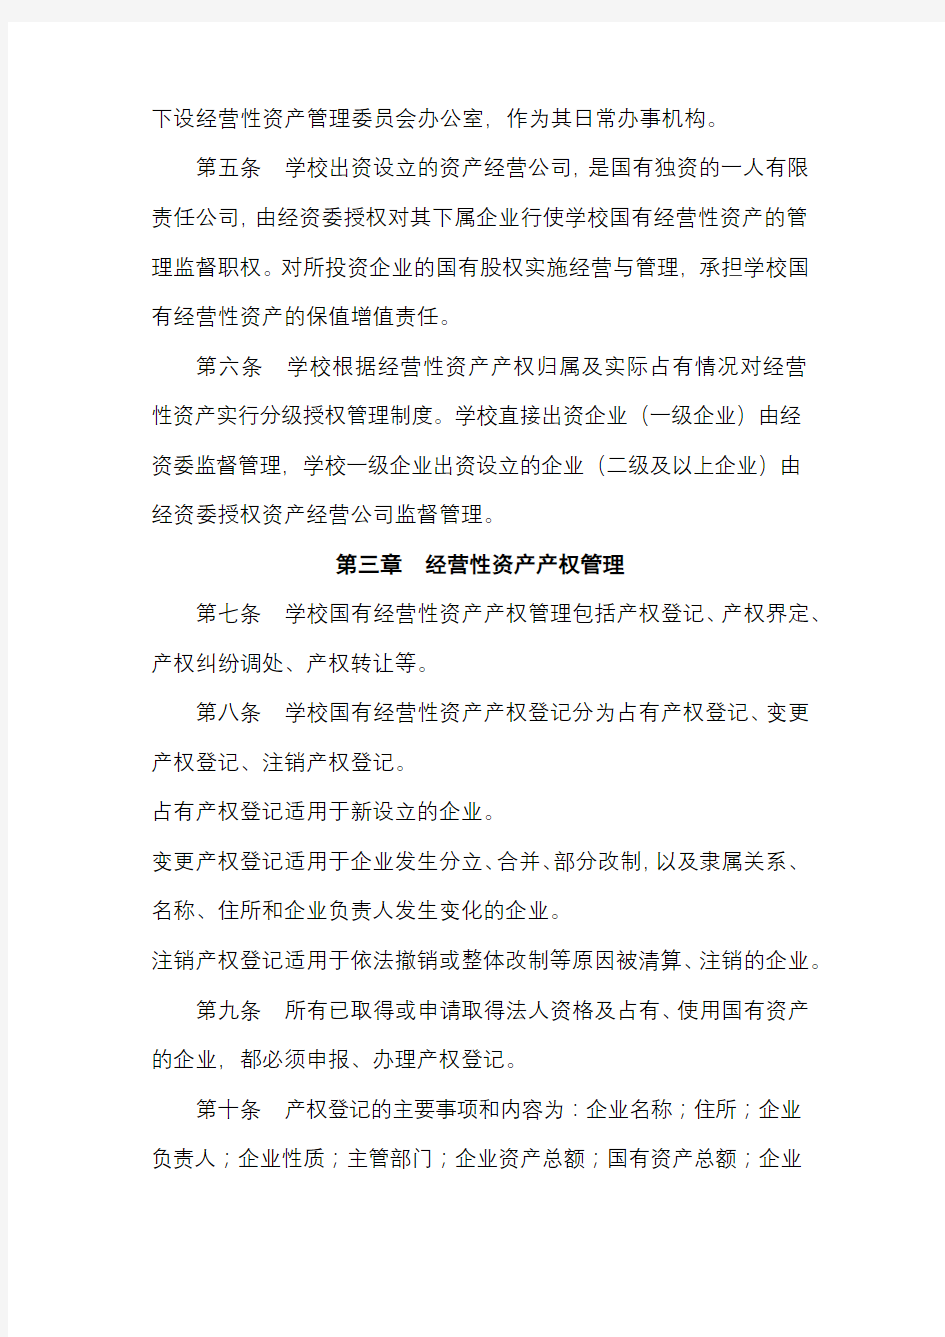 北京师范大学国有经营性资产管理暂行办法